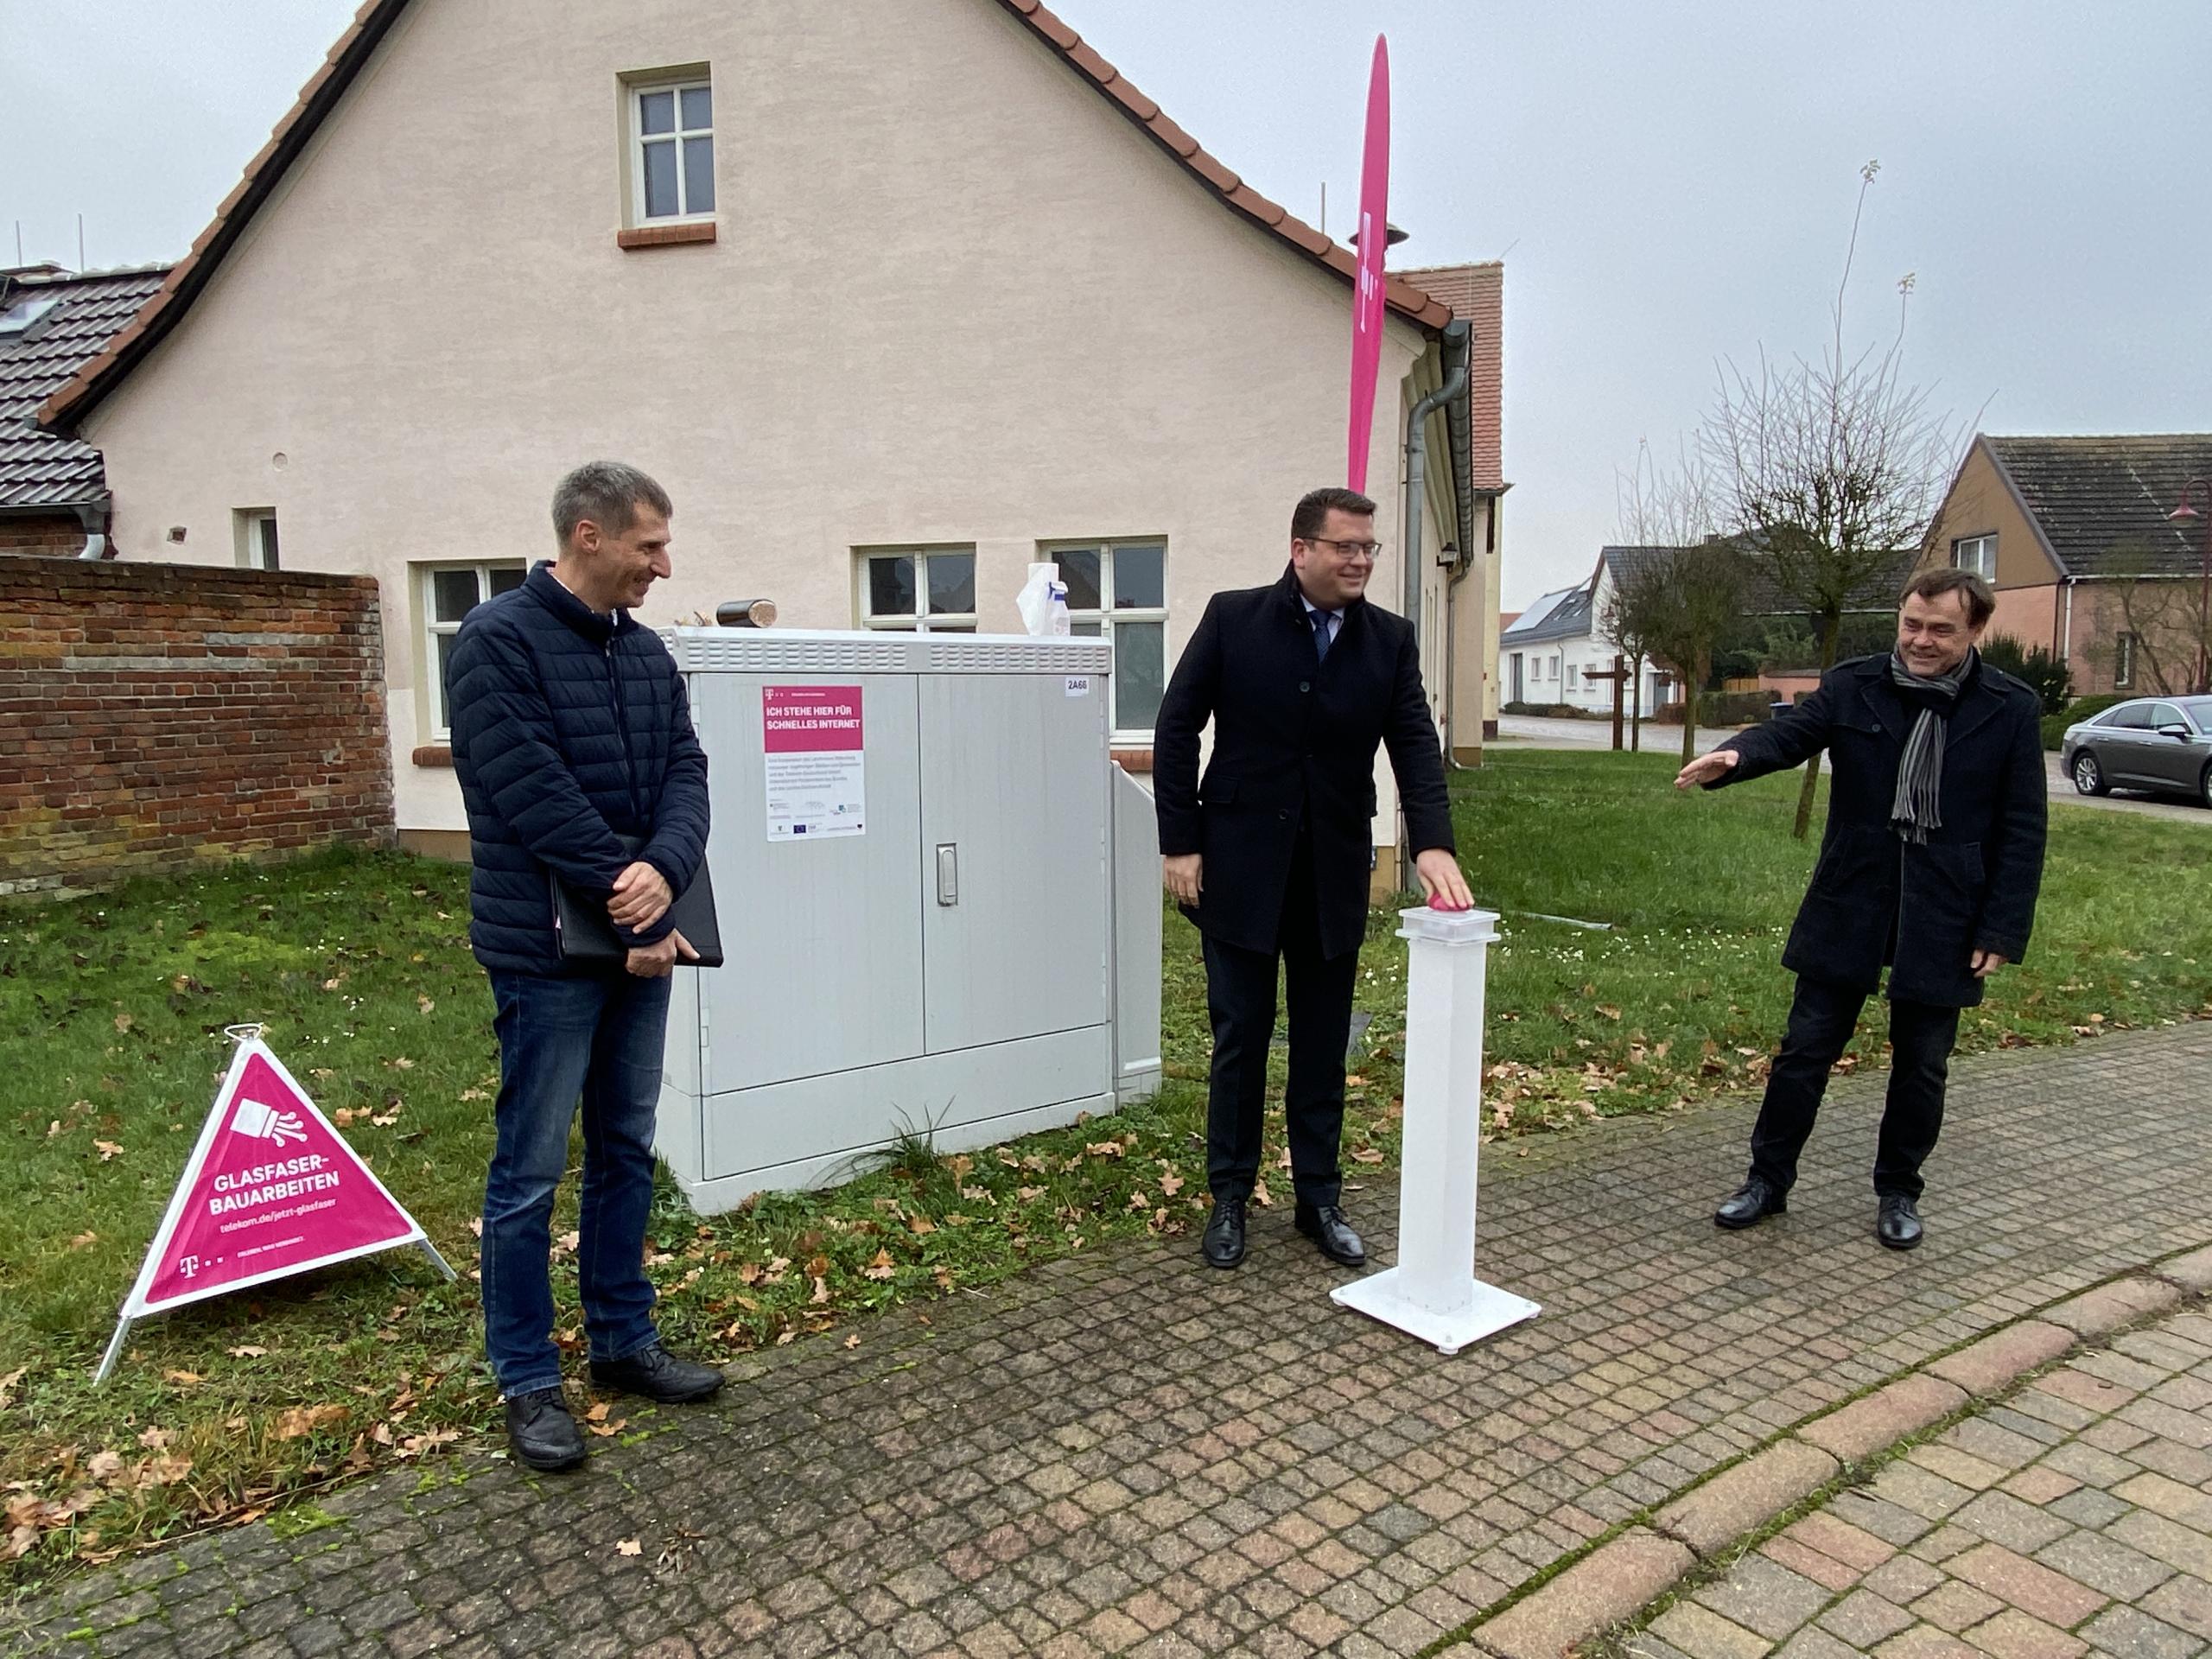 Landrat Tylsch und Bürgermeister Jahn geben Startschuss für den Ausbau der Glasfasern